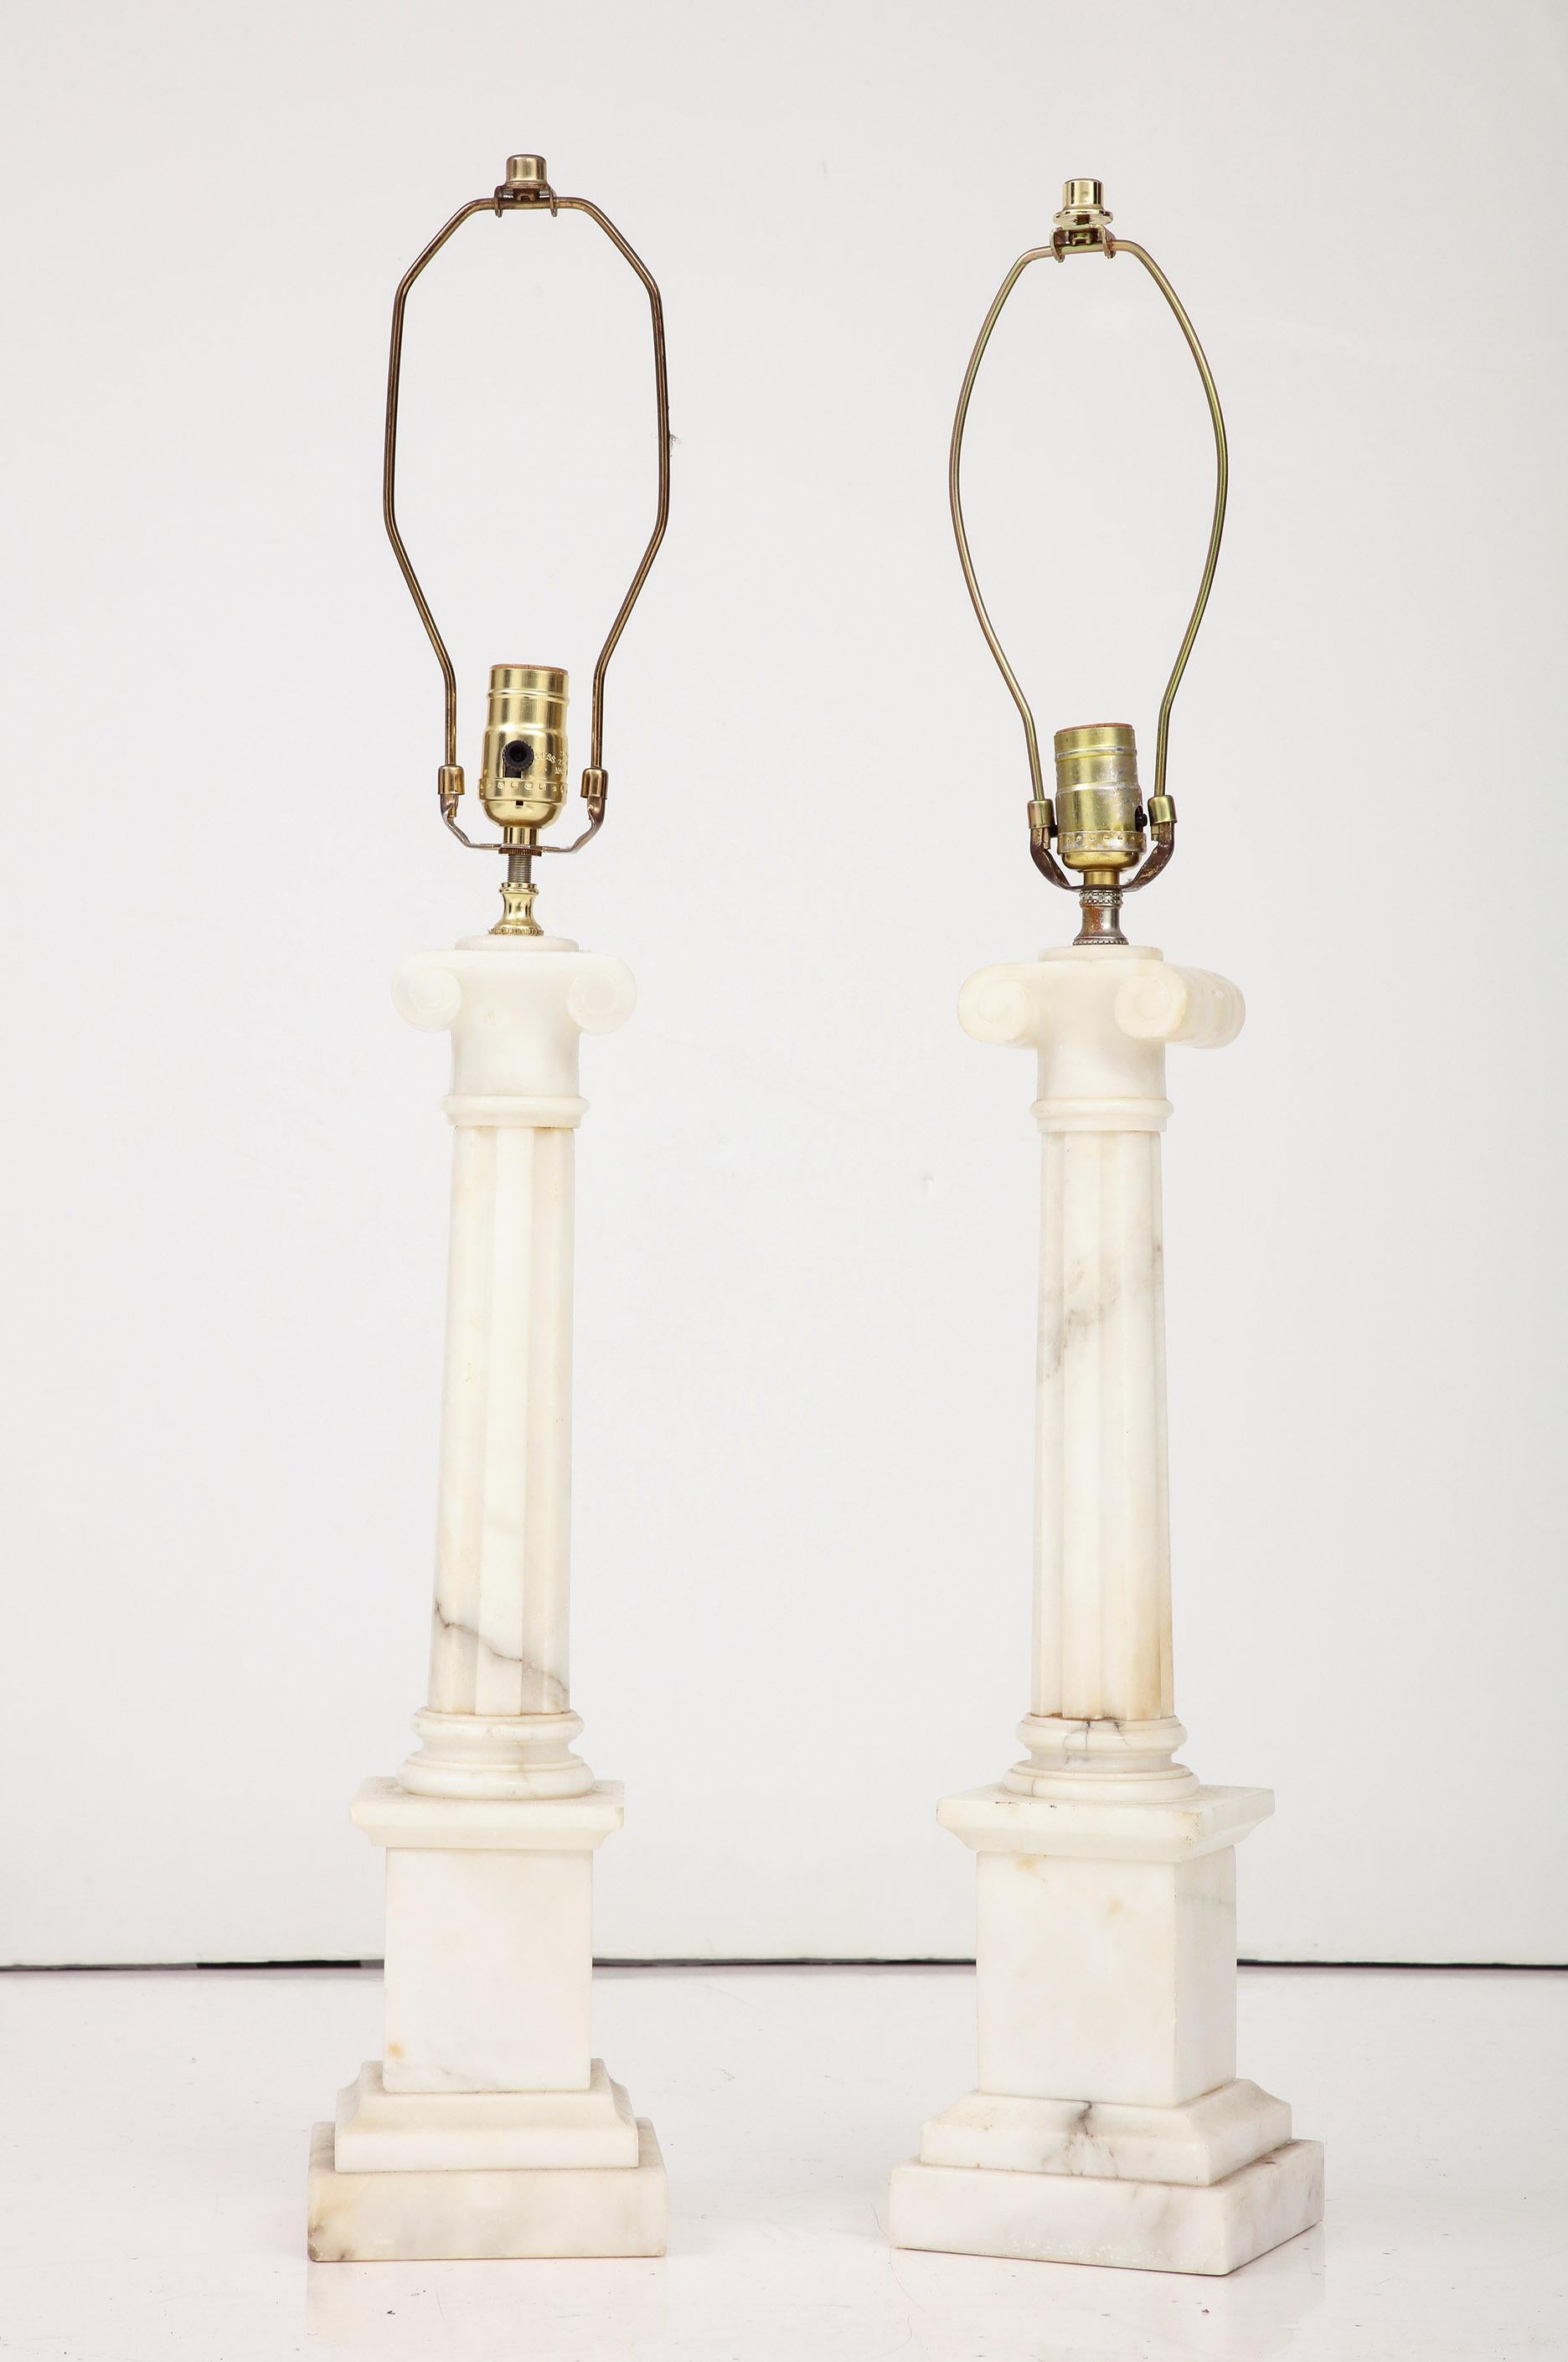 Paire de lampes à colonne en marbre de Carrera de style néo-classique italien. 
Hauteur de la colonne : 19